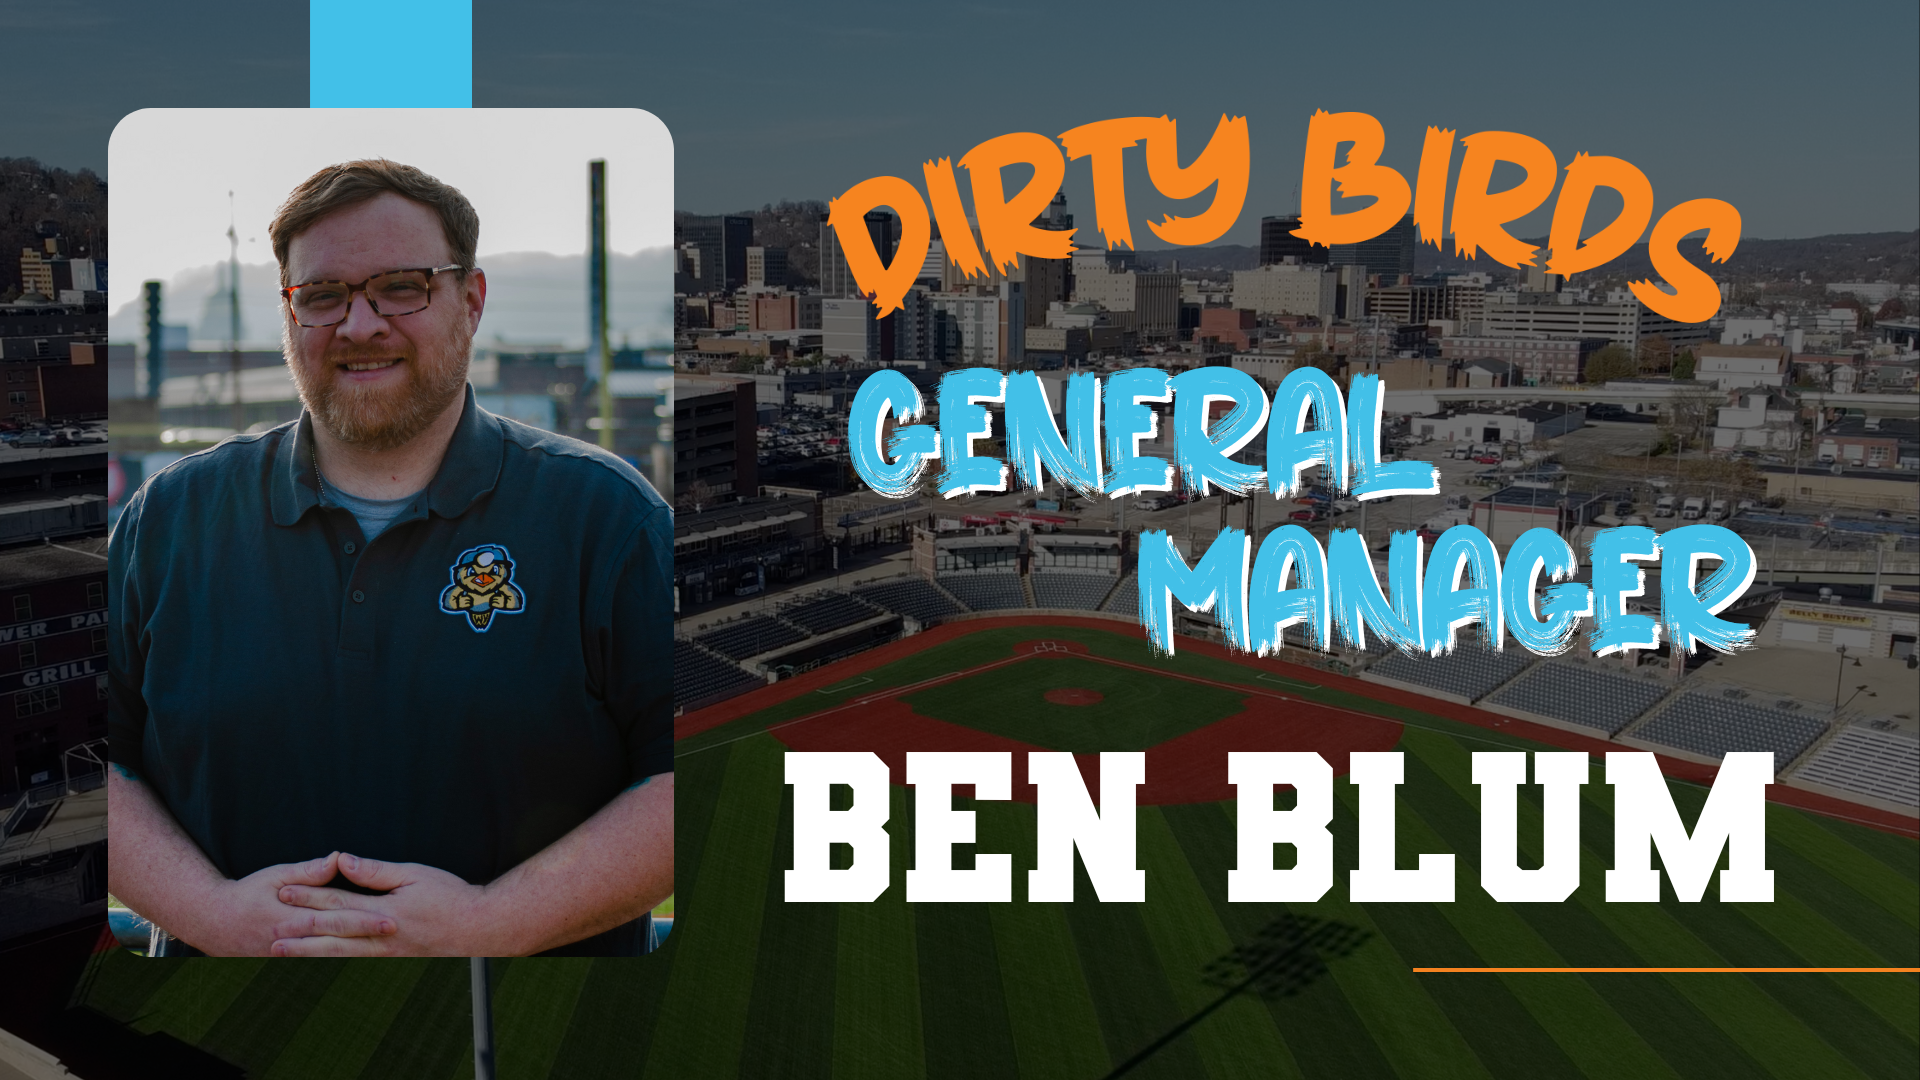 BEN BLUM NAMED DIRTY BIRDS' GENERAL MANAGER